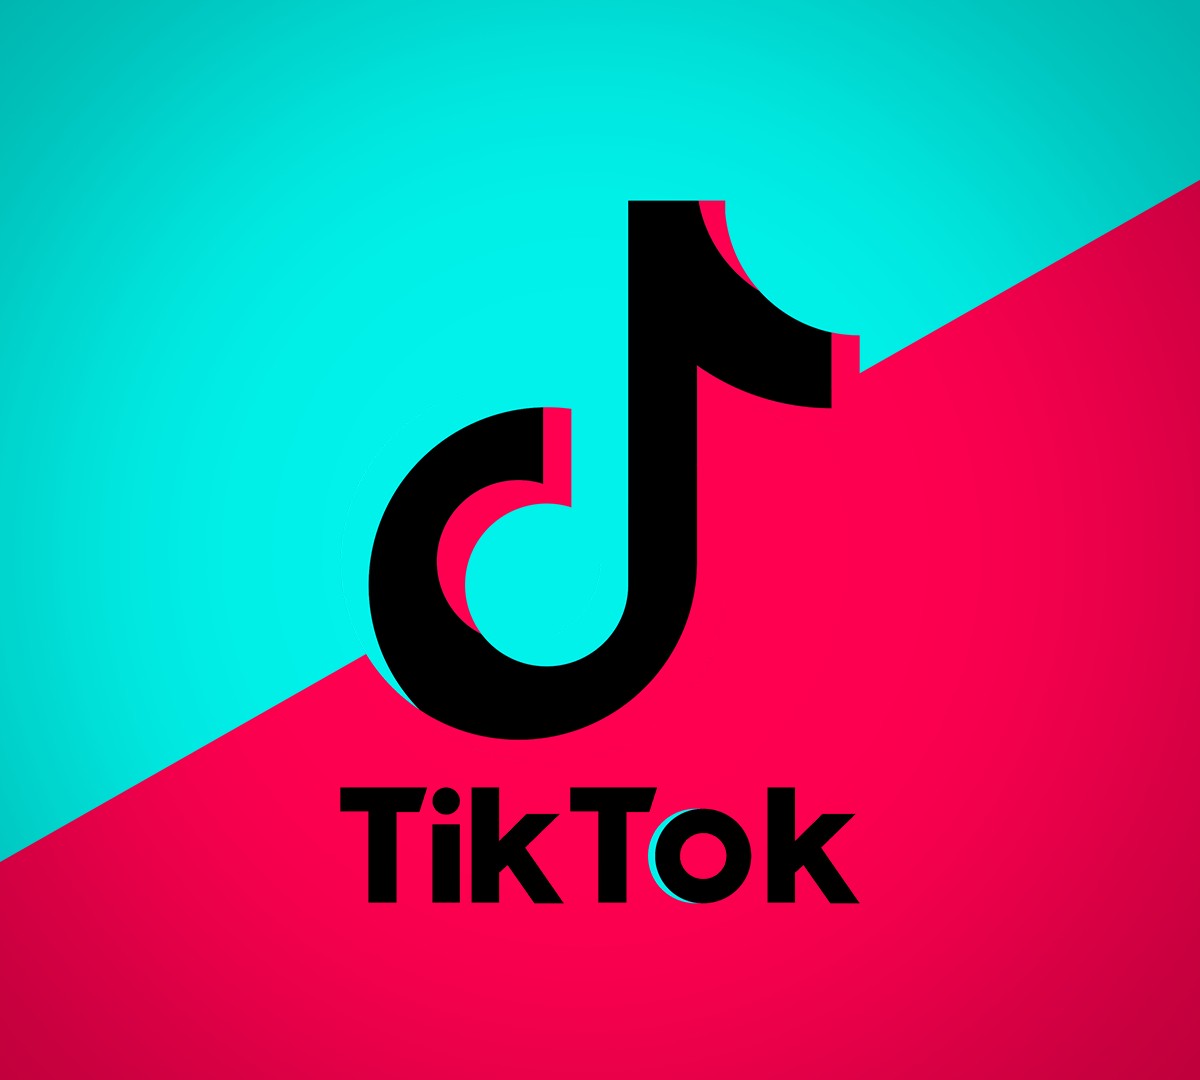 TC Ensina: como remover sua foto de perfil do TikTok 